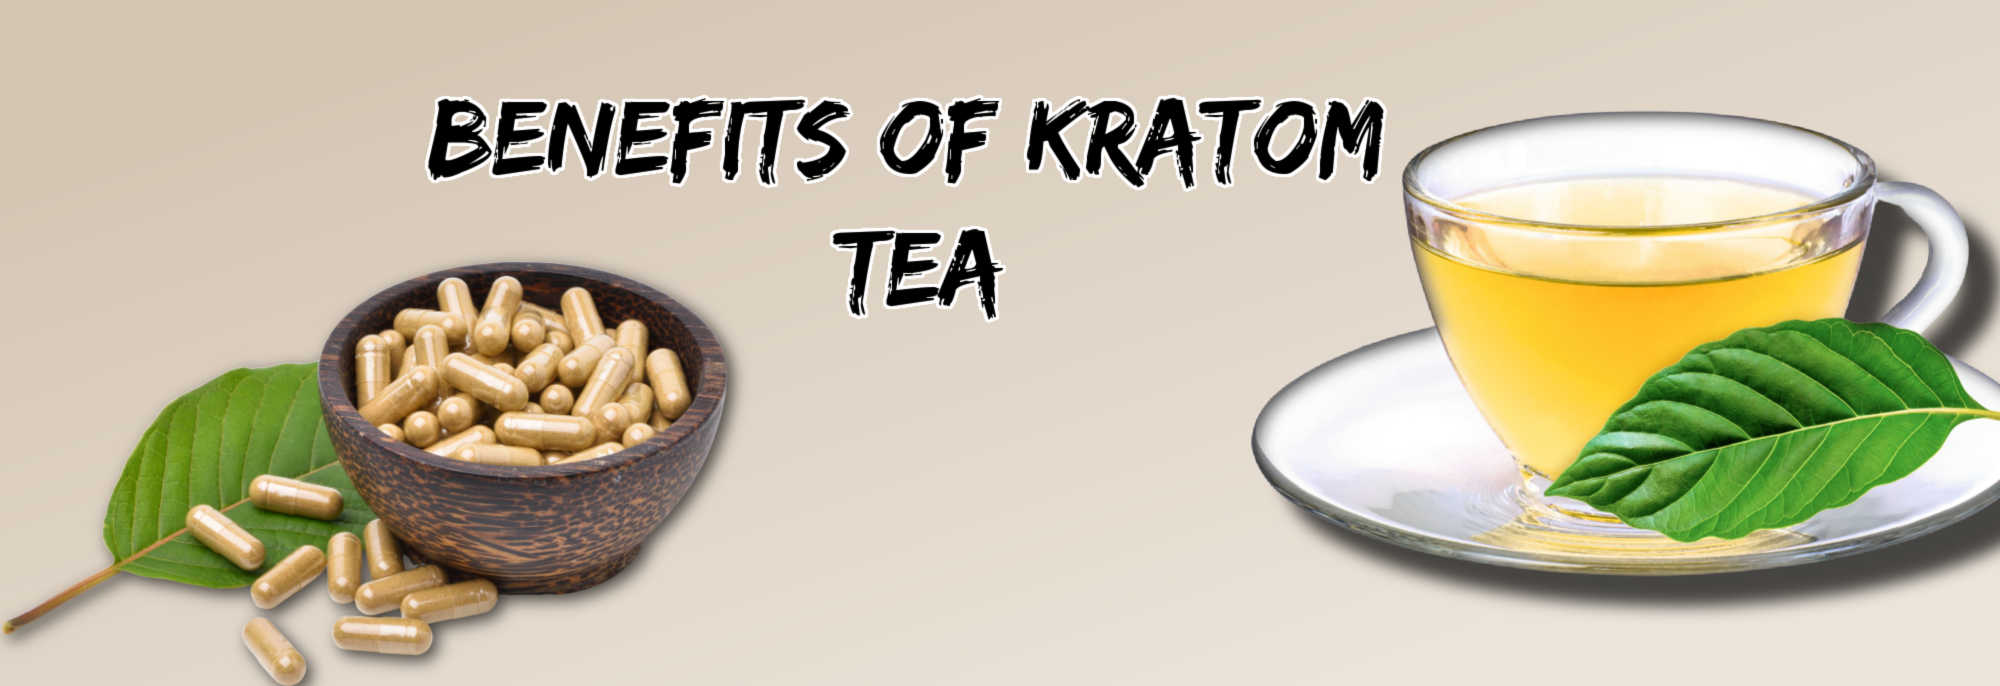 image of kratom tea benefits